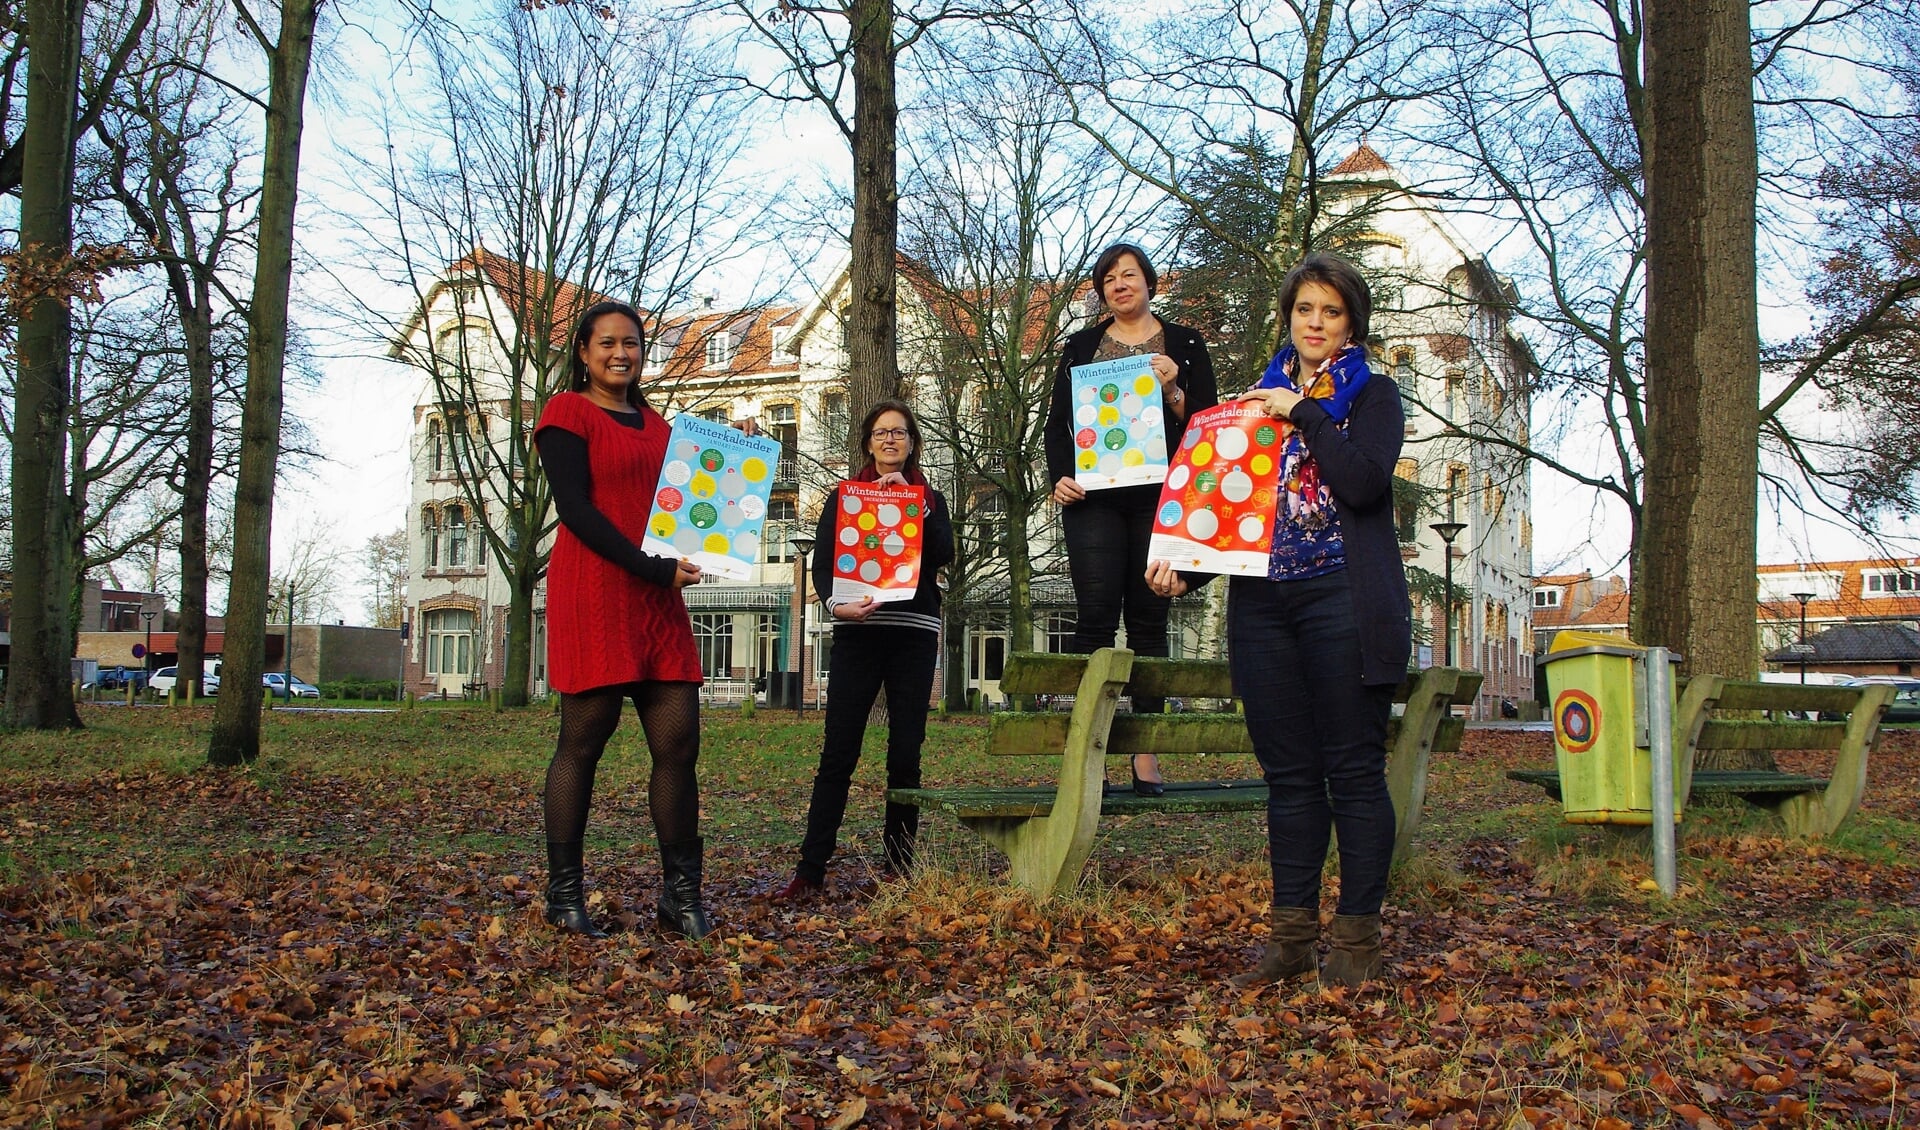 Adinda Heemskerk, Mirjana Pannekoek, Femke Vermeer en Sietske Steenbergen met de kalender. Doortje van Helden ontbreekt op de foto. | Foto